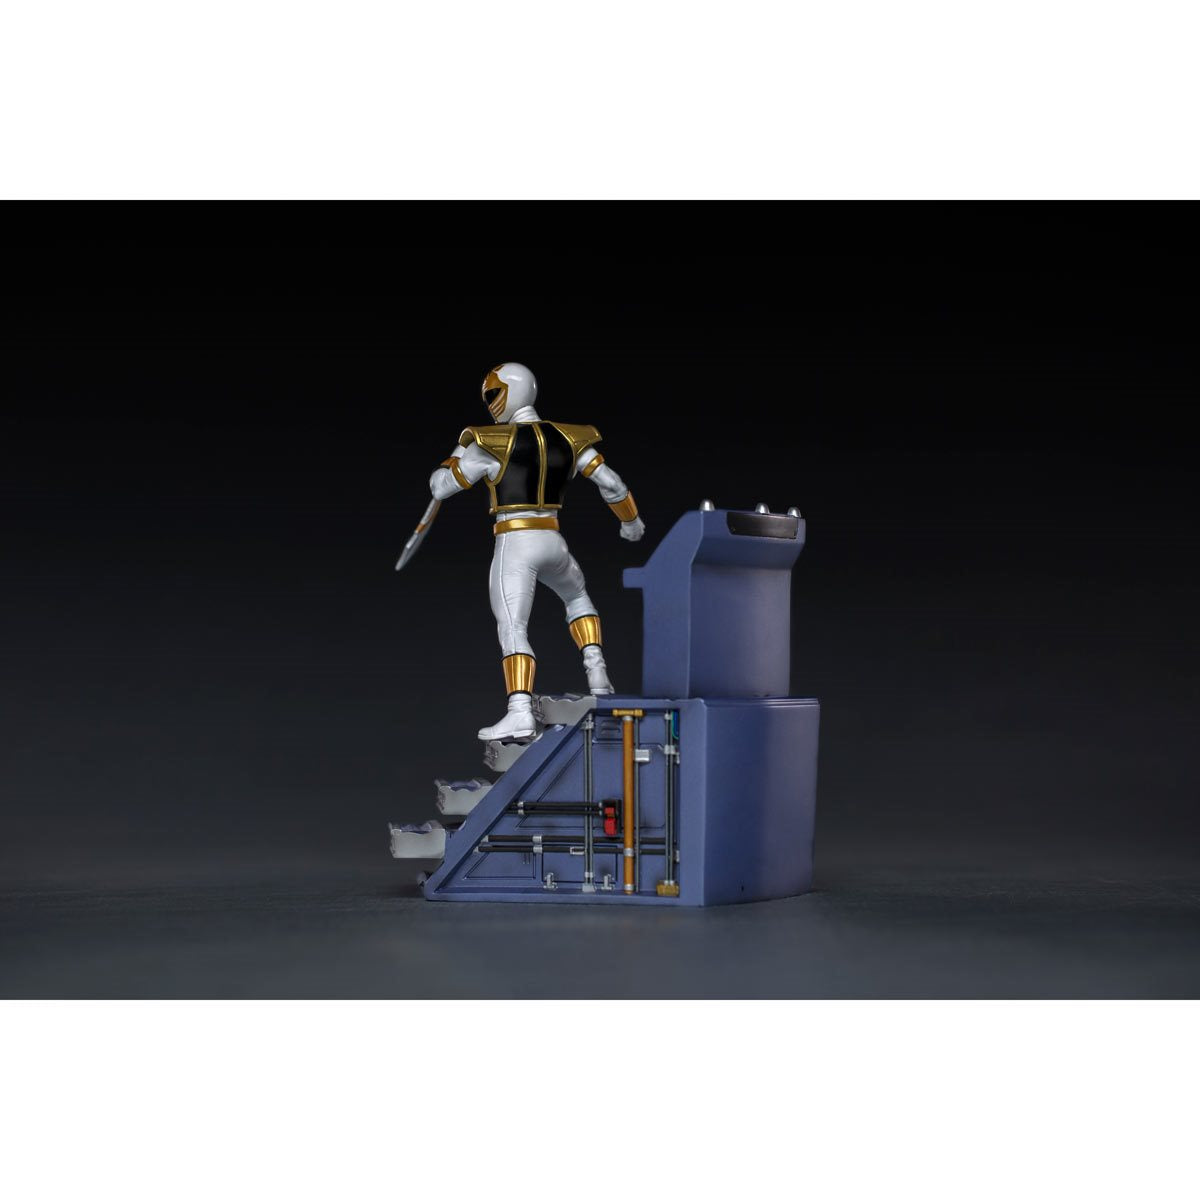 Power Rangers White Ranger BDS Art 1/10 Scale Statue